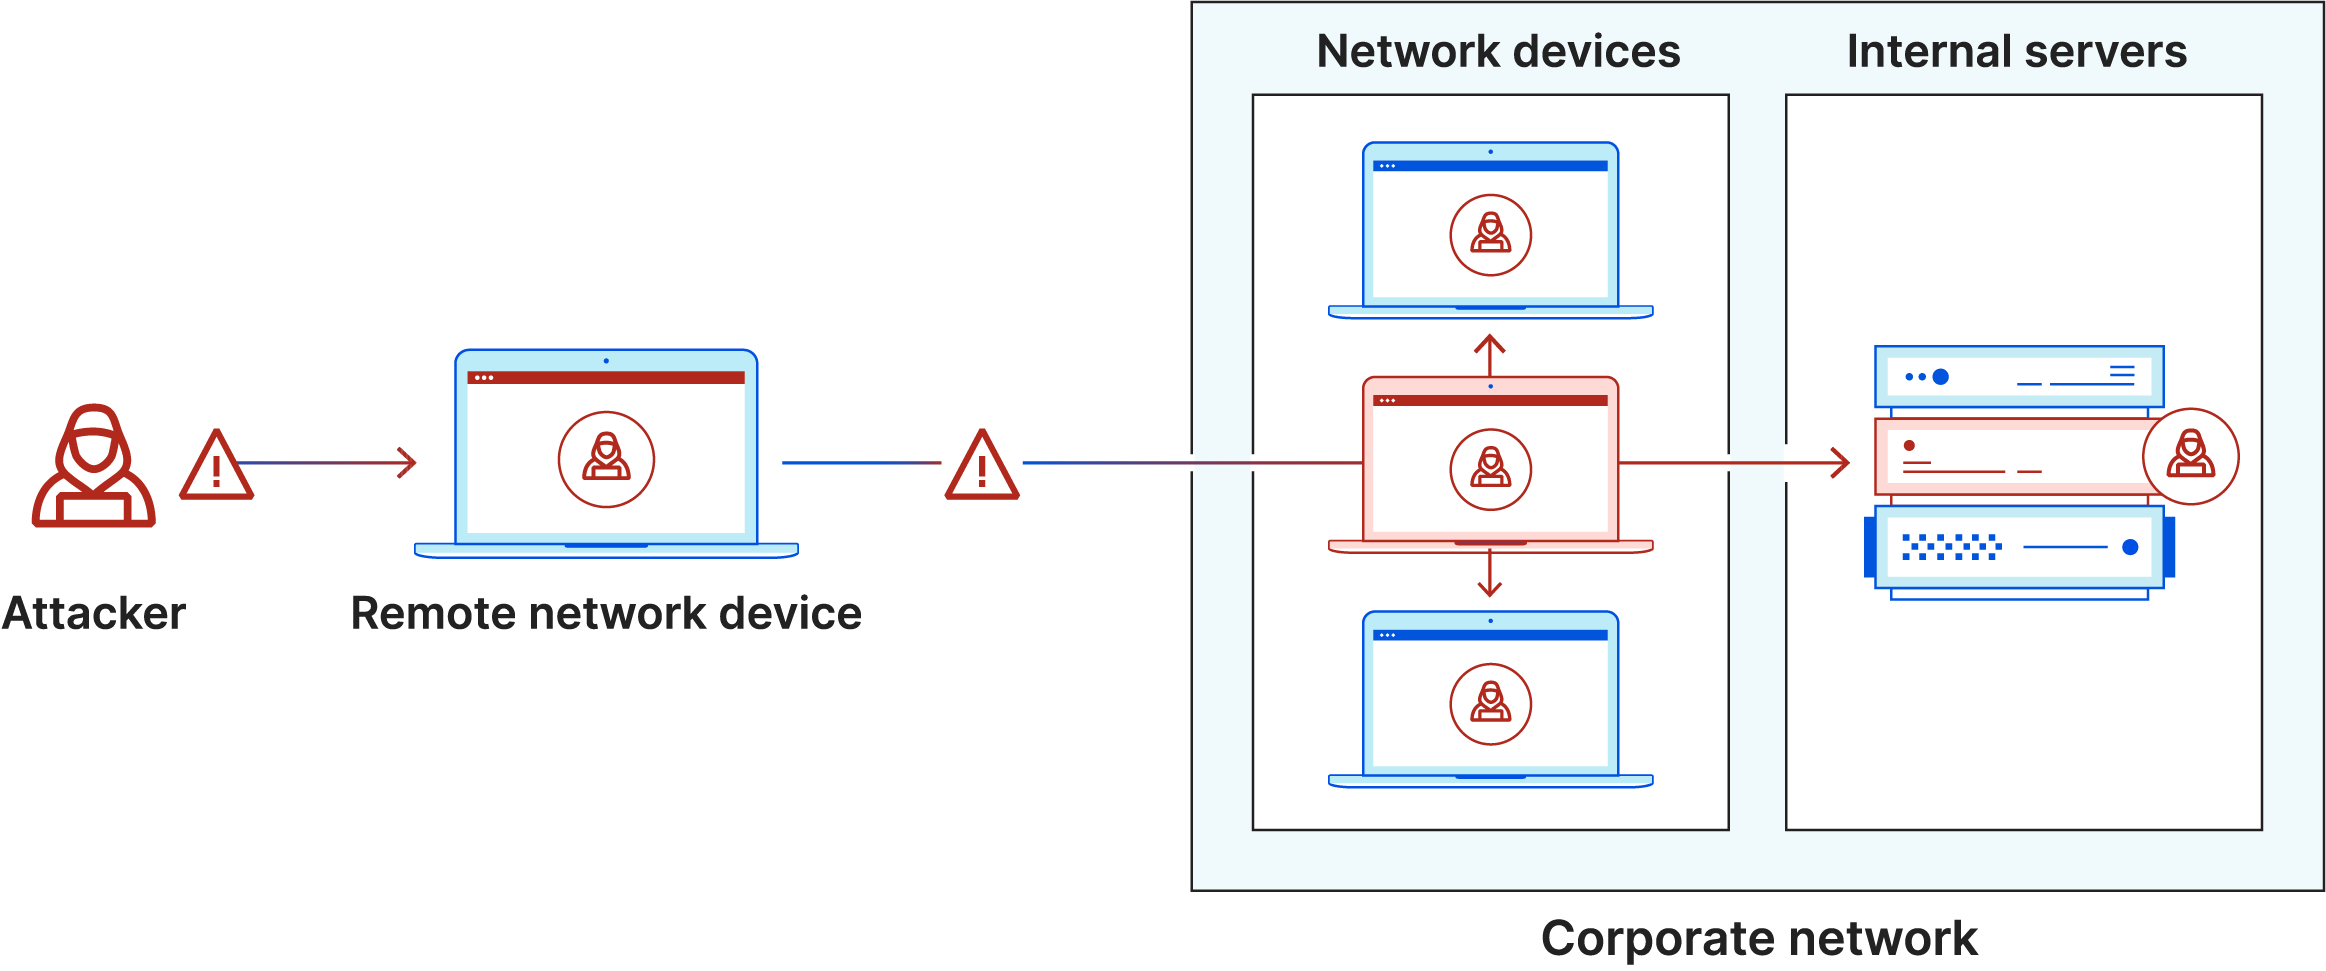 Diagramm der lateralen Bewegung. Der Angreifer infiziert einen Laptop, dringt in ein sicheres Netzwerk ein und bewegt sich lateral zu anderen Computern und Servern.